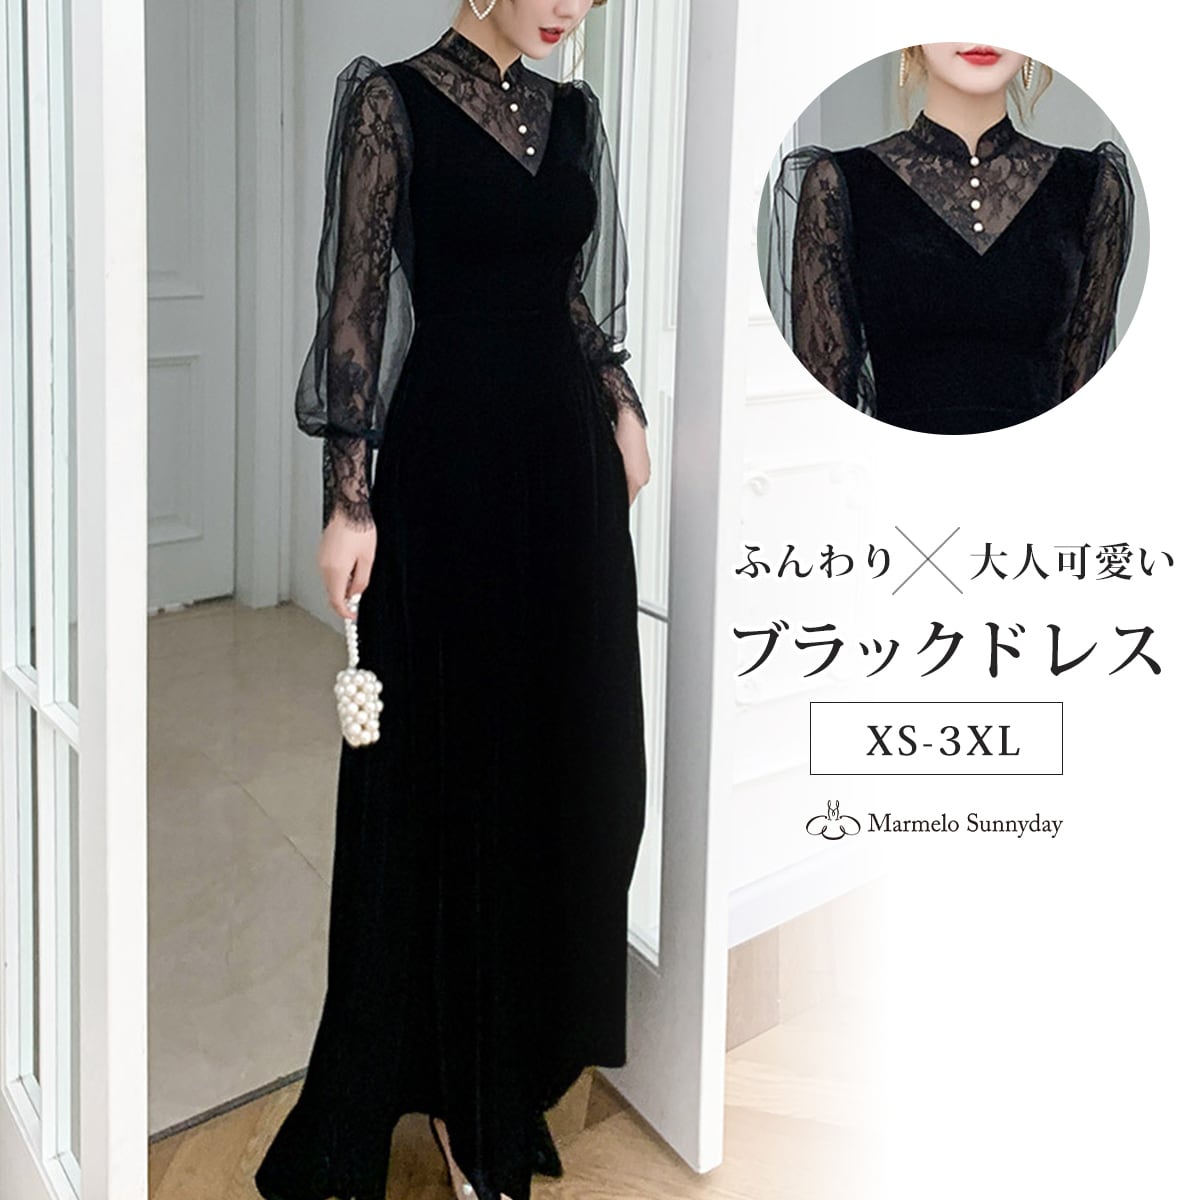 イブニングドレス 黒 ベロア ベルベット ロングドレス 発表会ドレス ブラック